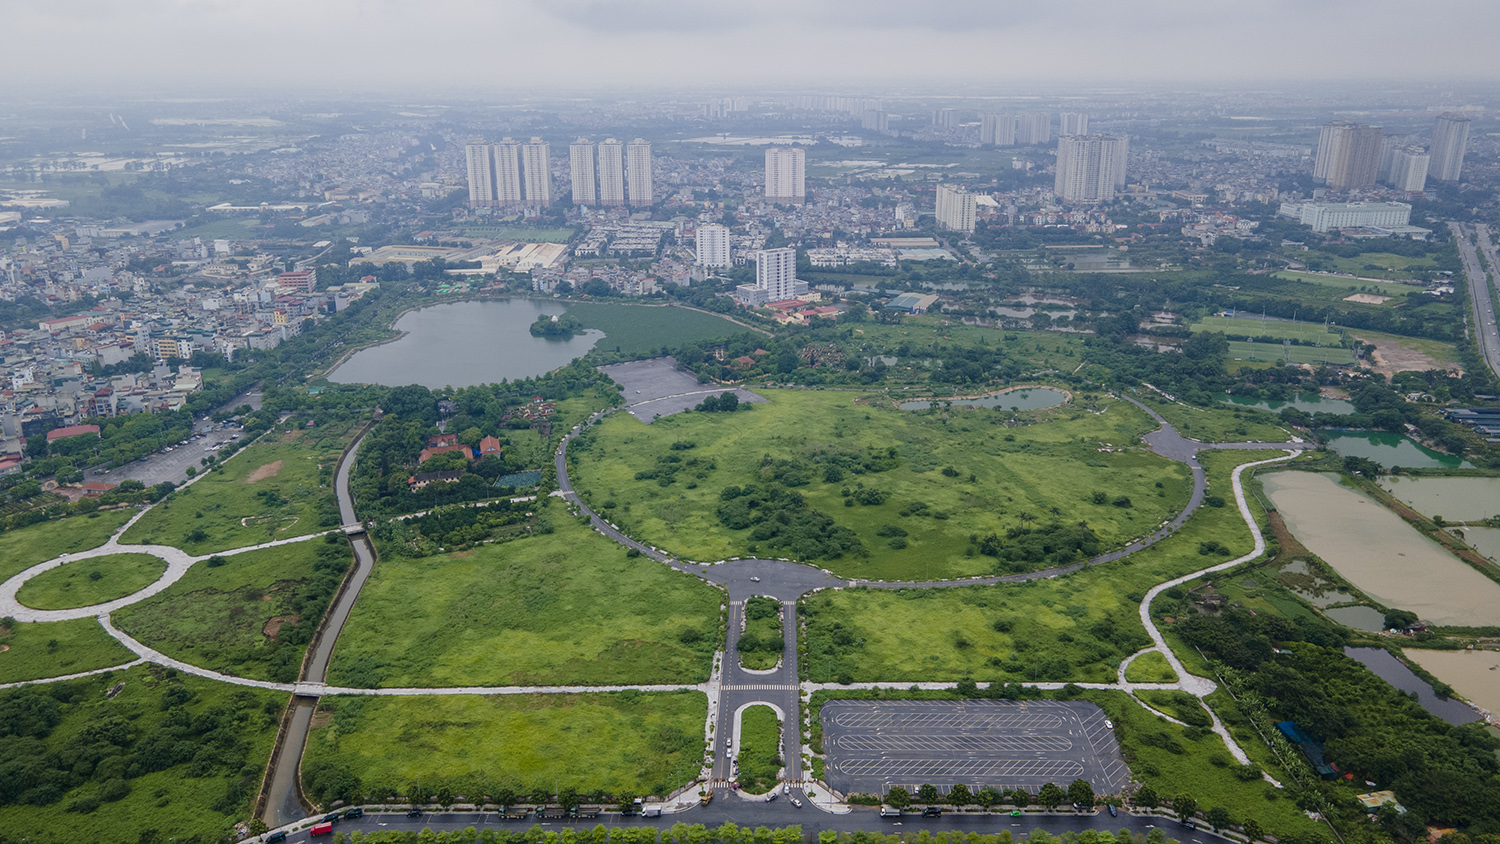 Công viên Chu Văn An (xã Thanh Liệt, huyện Thanh Trì, Hà Nội) có diện tích hơn 50ha, được kỳ vọng trở thành “lá phổi xanh” mang lại không khí trong lành cho cư dân khu vực Tây Nam Hà Nội.